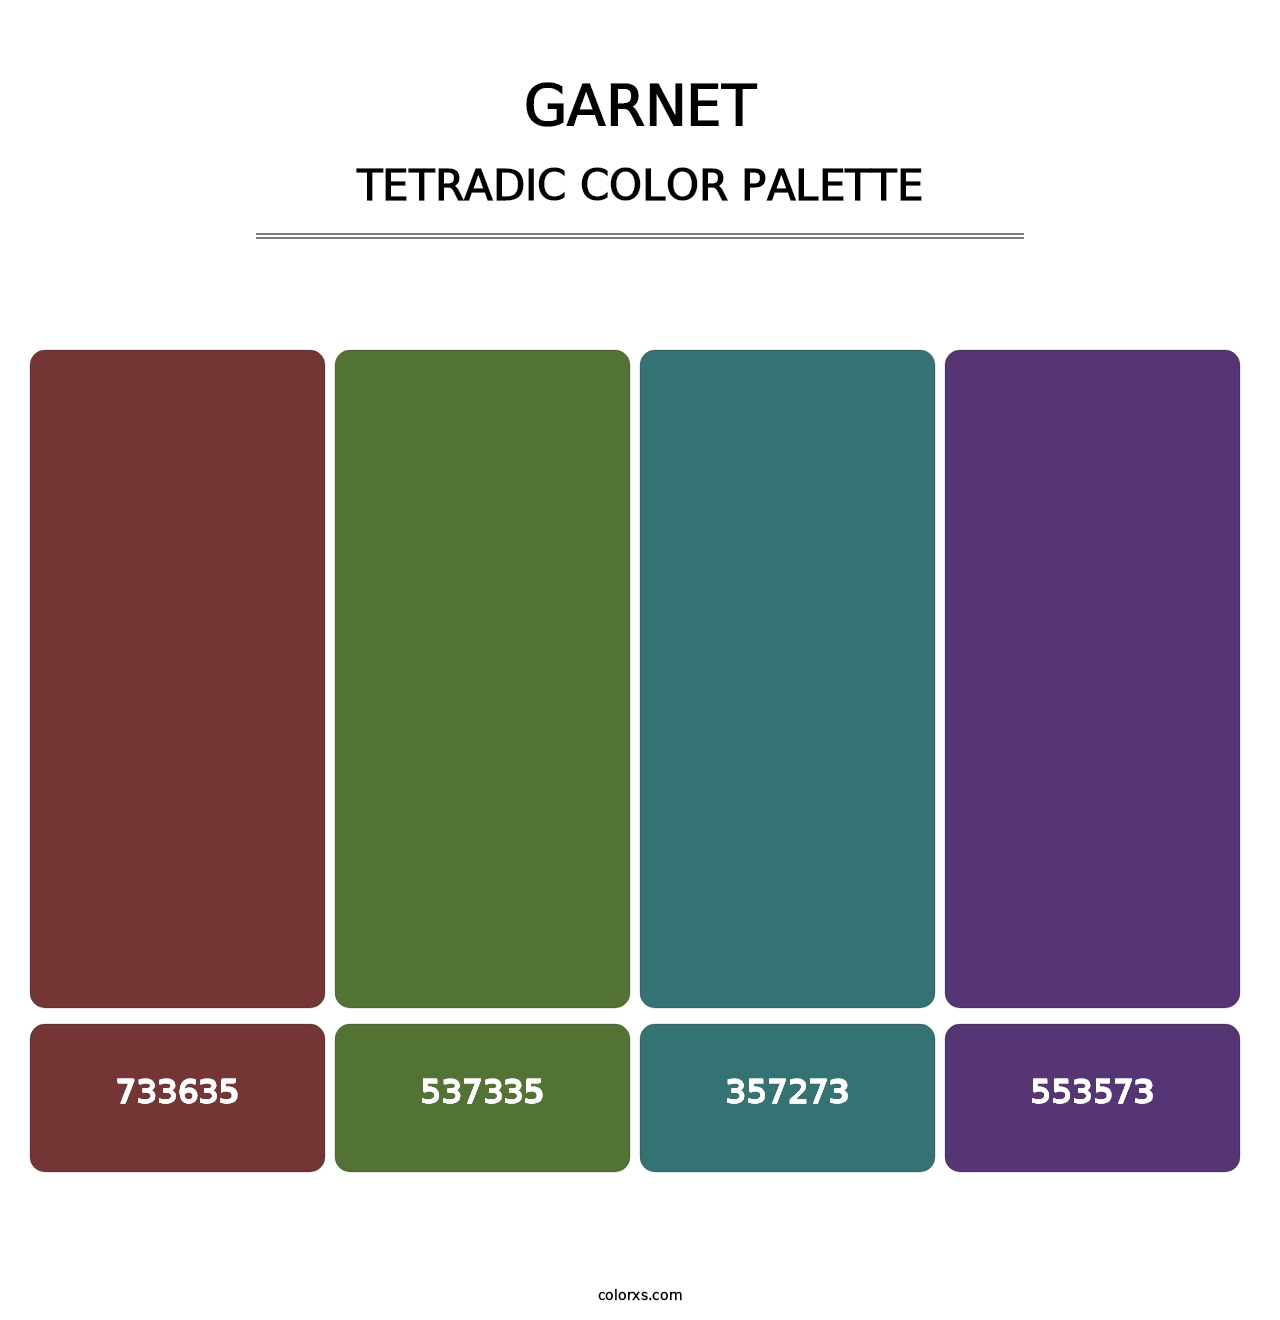 Garnet - Tetradic Color Palette